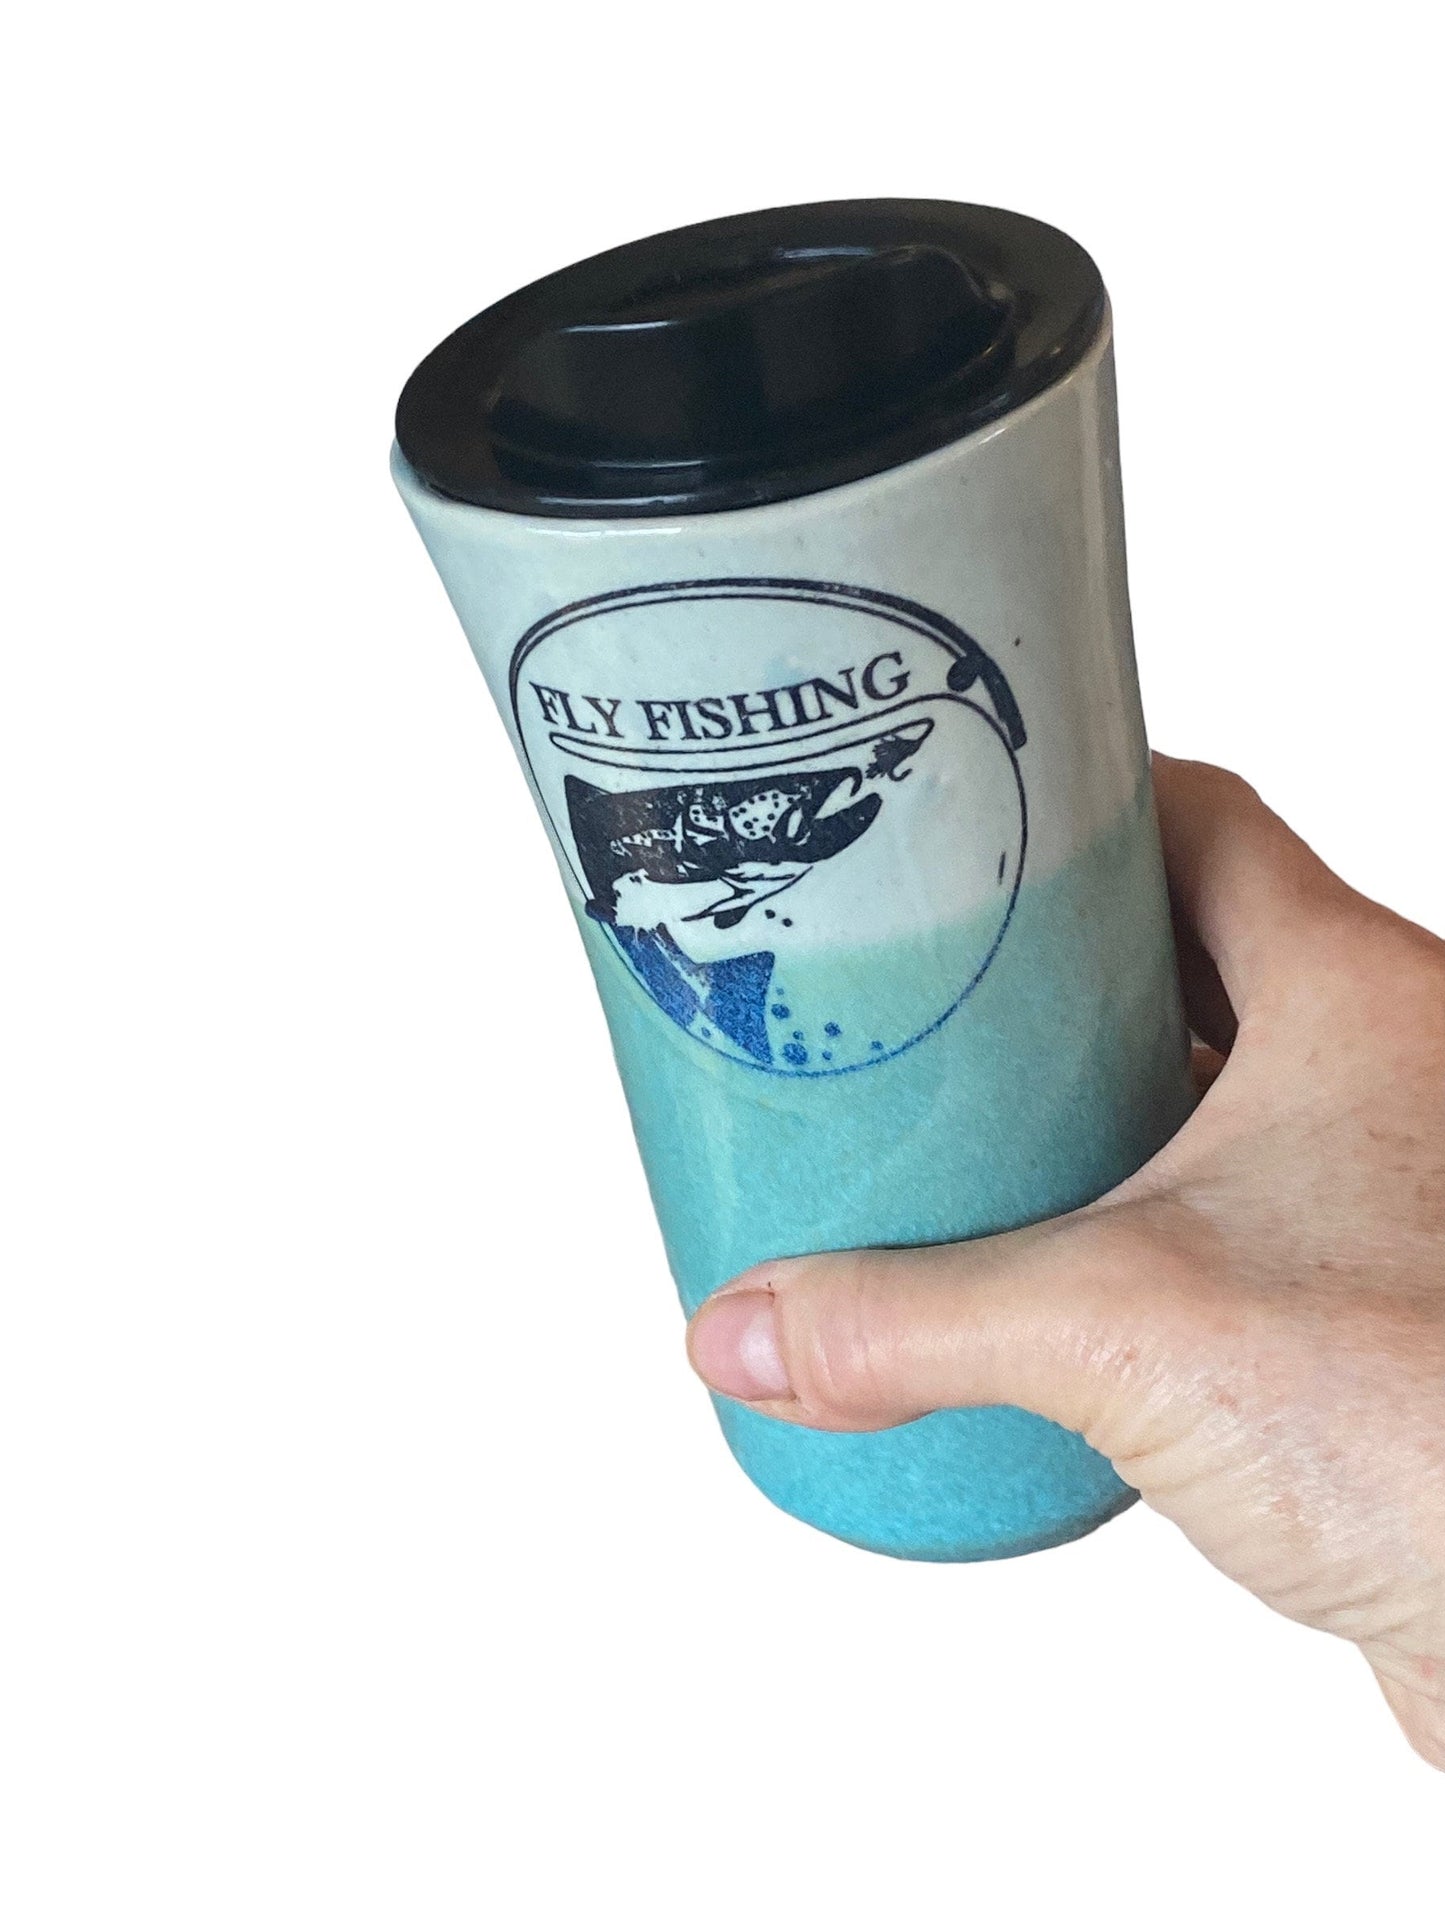 Handmade Turquoise Travel Mug Glazed With Turquoise and Blue and Embellished With Fly Fishing Logo - Pottery Mug